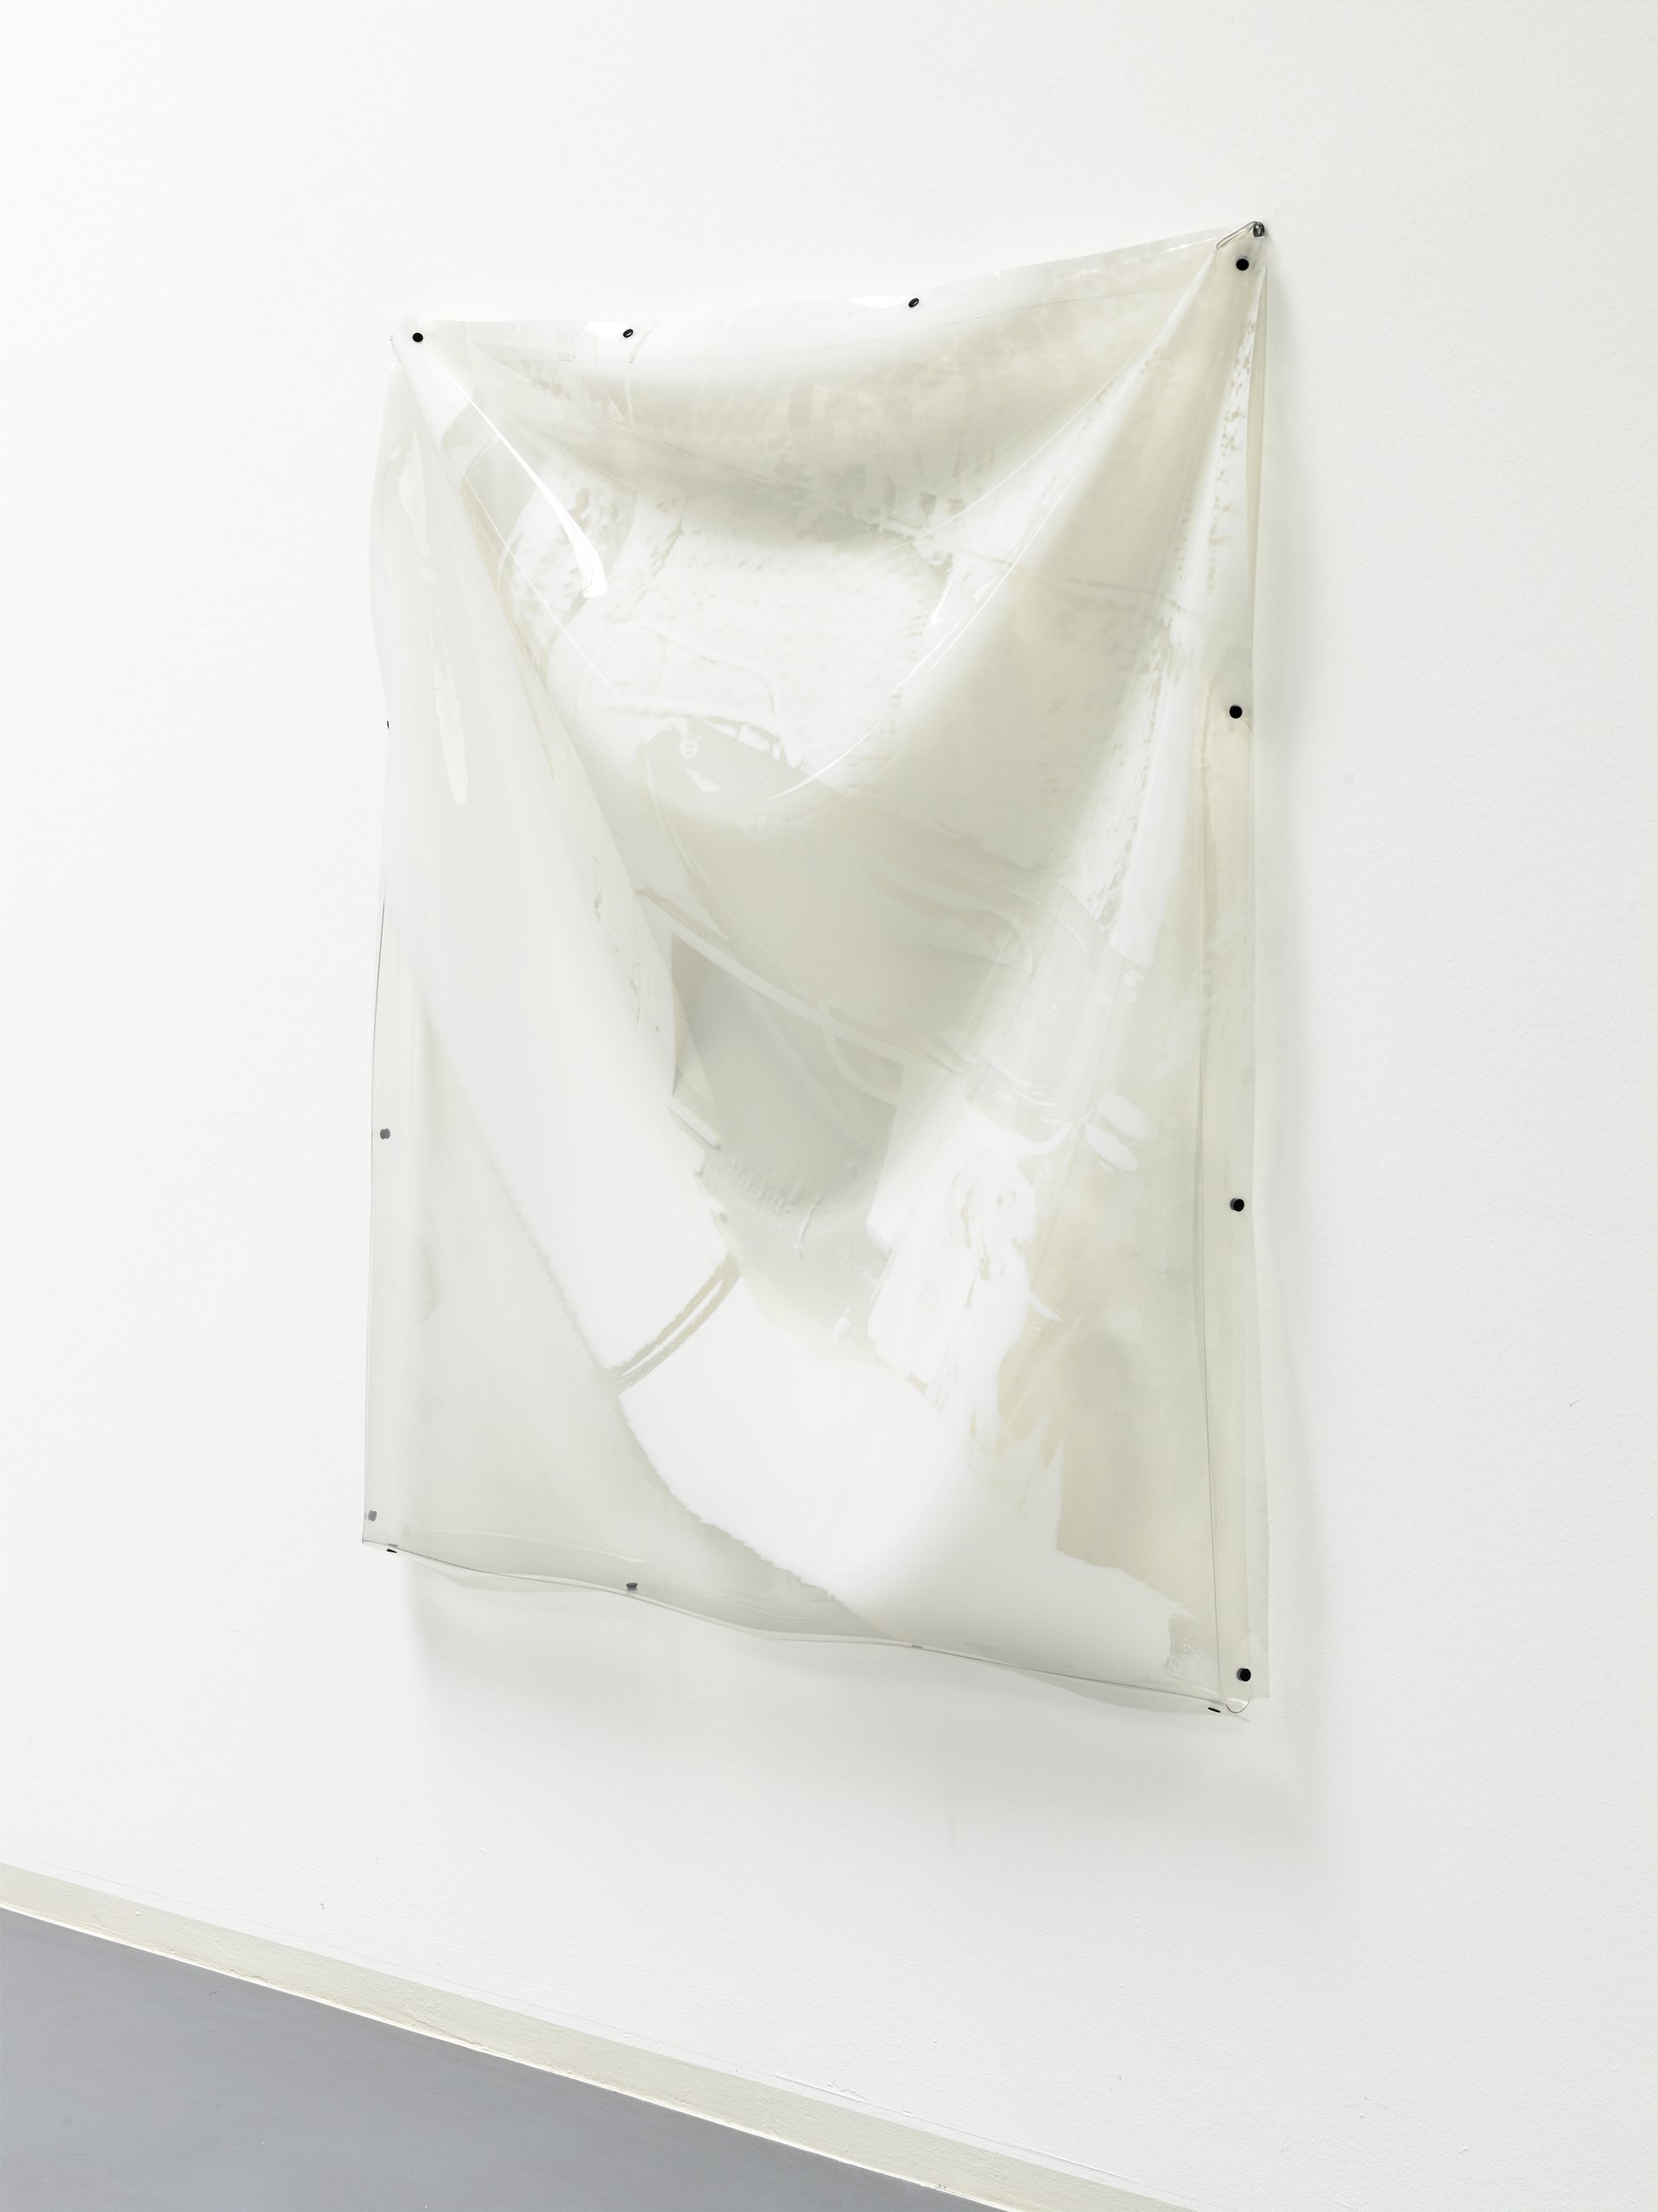 Alexander Bornschein, Installationsansicht, 2015, Bonner Kunstverein, Courtesy der Künstler. Photo: Simon Vogel